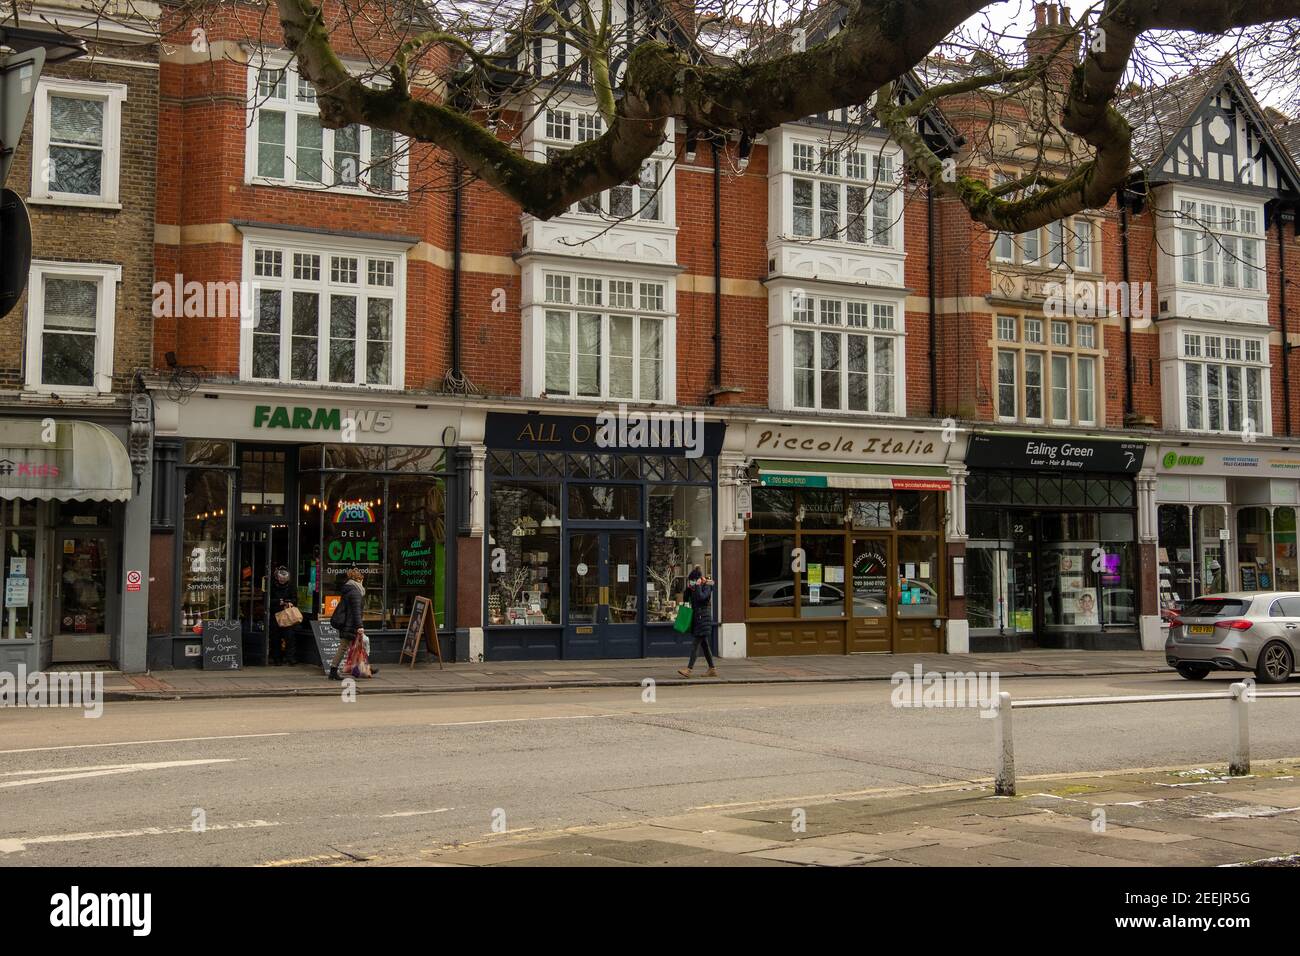 Londres- pequeñas tiendas independientes locales en Ealing Green, Ealing Broadway en el oeste de Londres Foto de stock